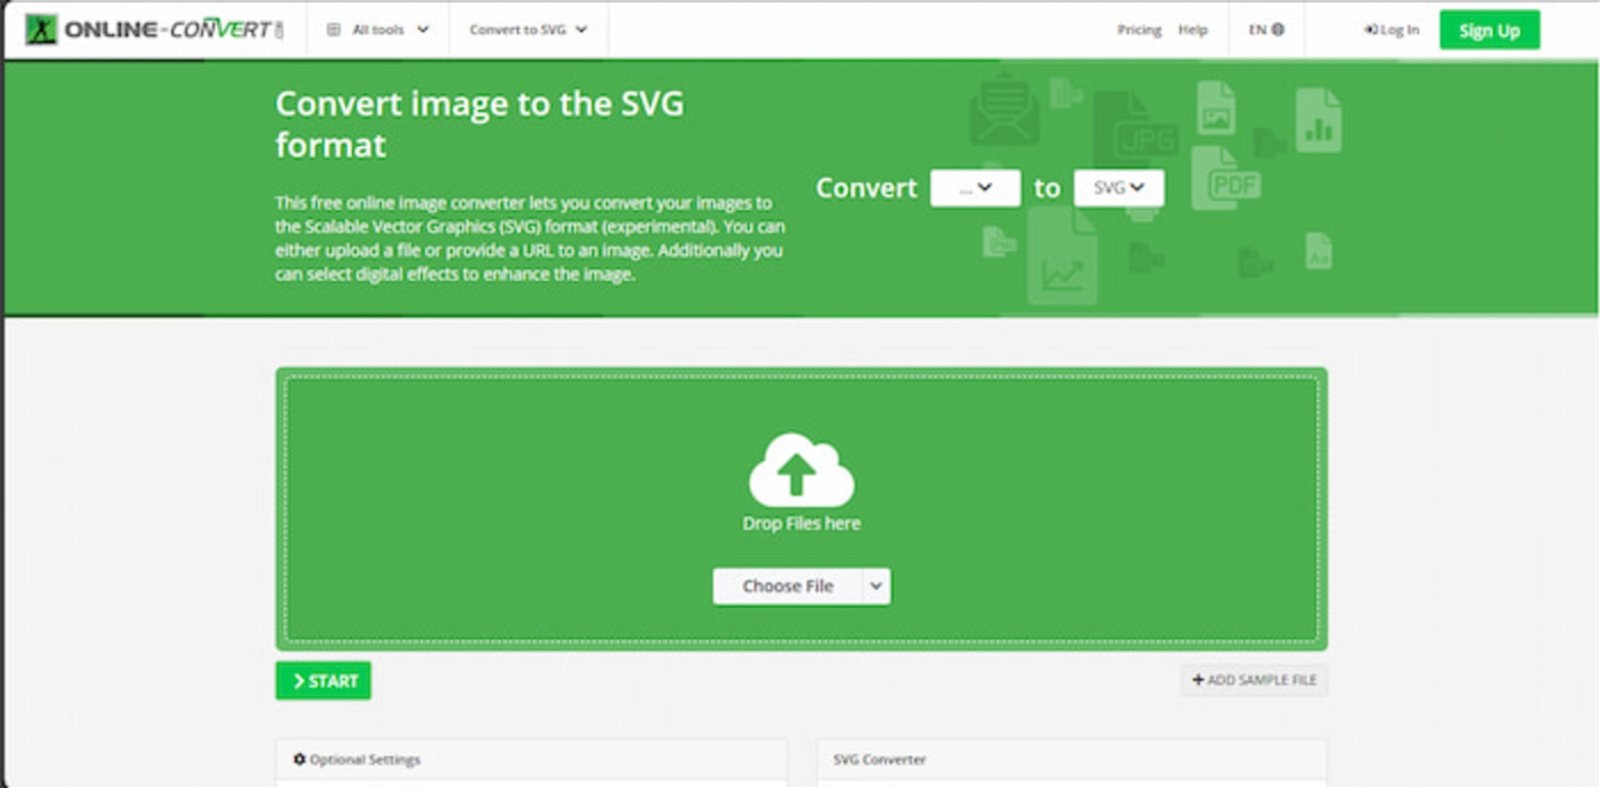 Online-Convert no solo permite vectorizar imágenes, sino también convertir otros formatos de imágenes